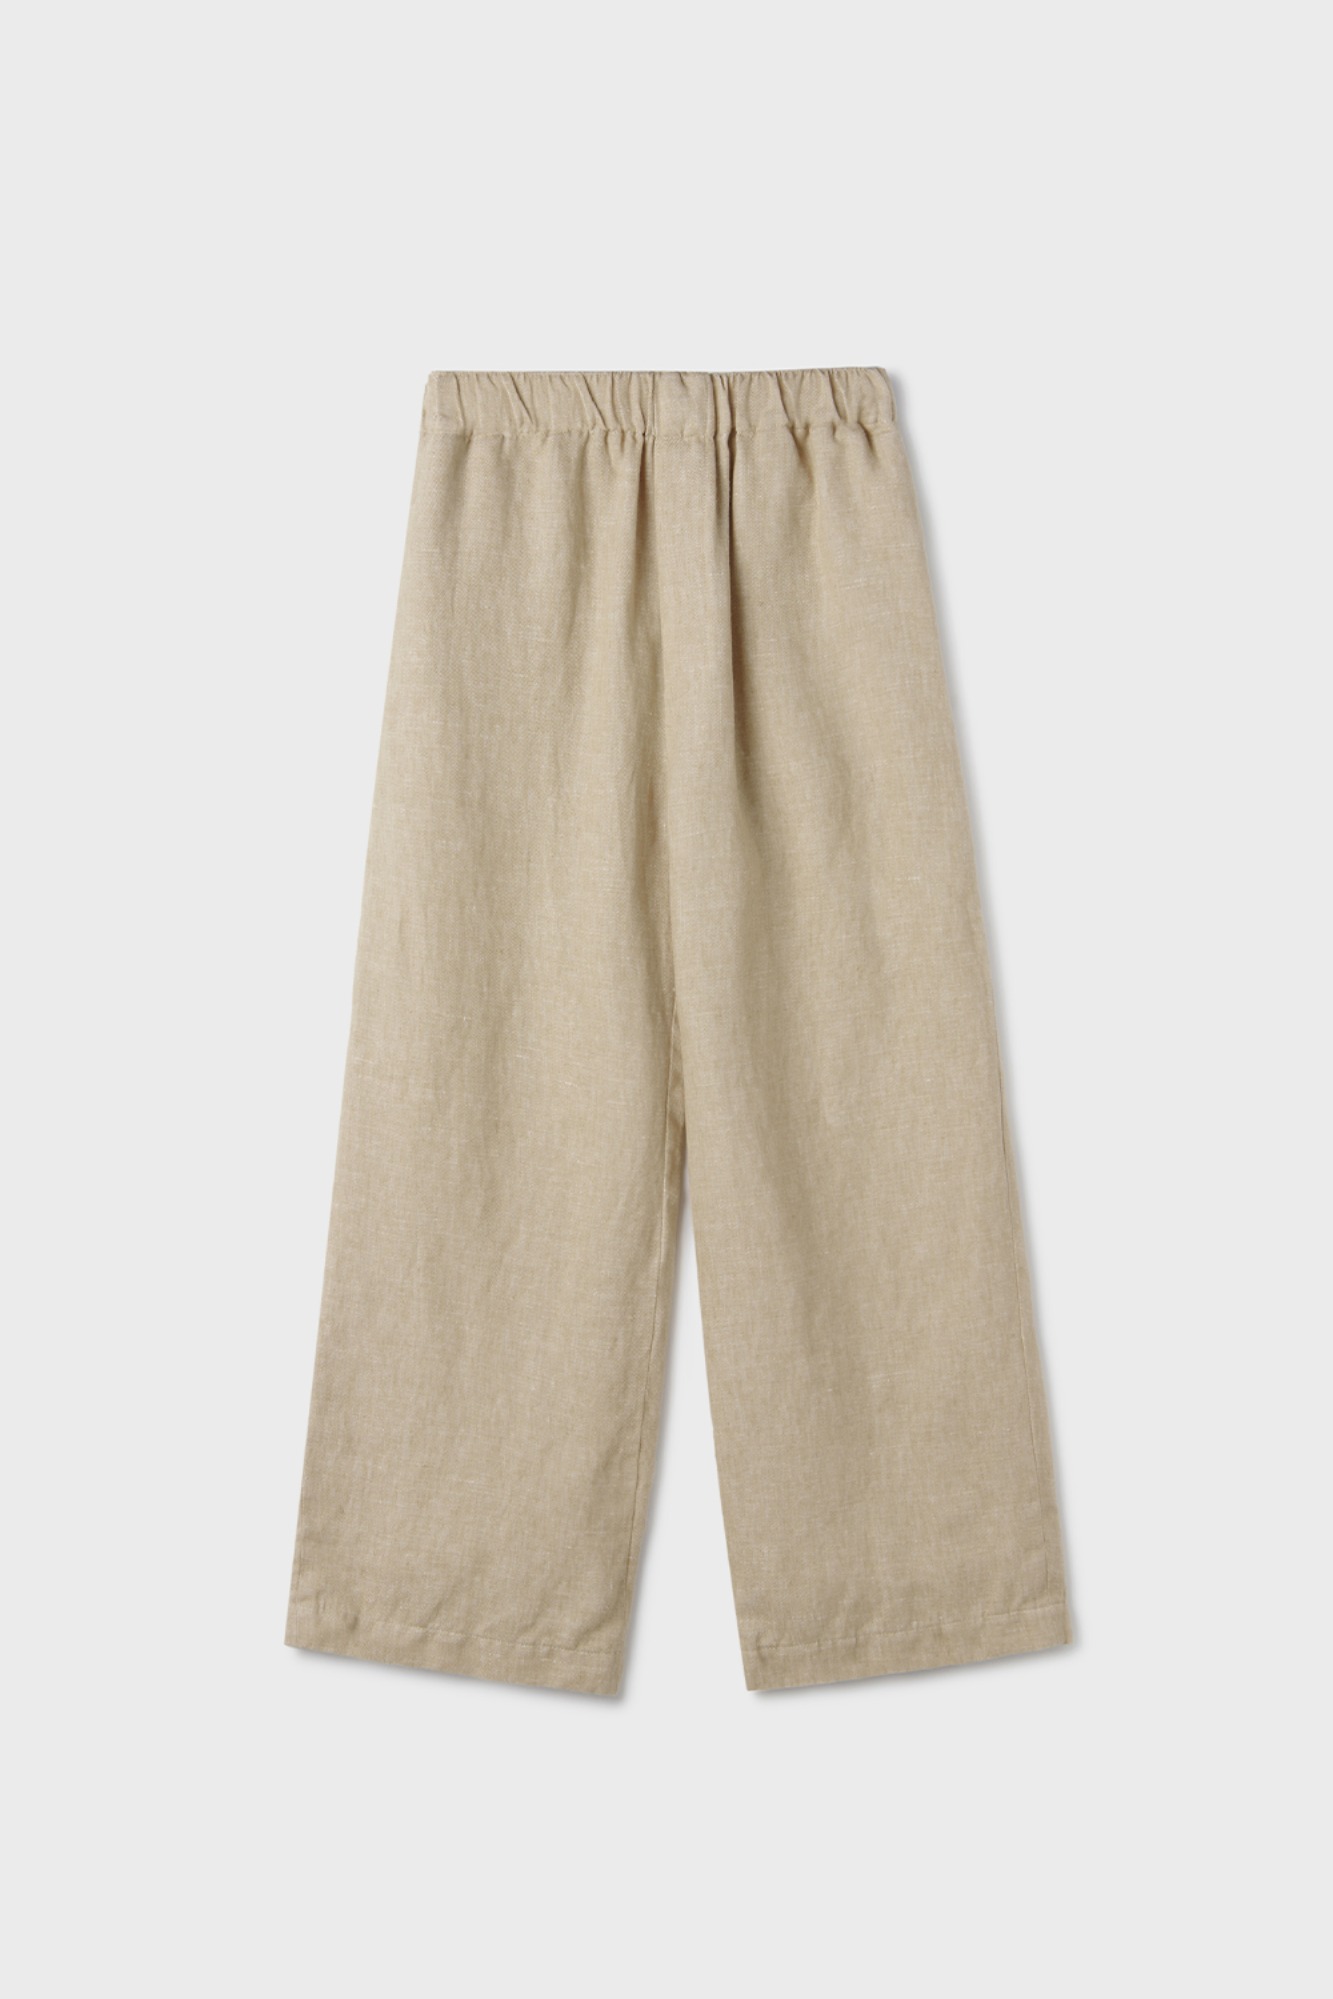 [6/12 순차출고] Hemp Linen Pants